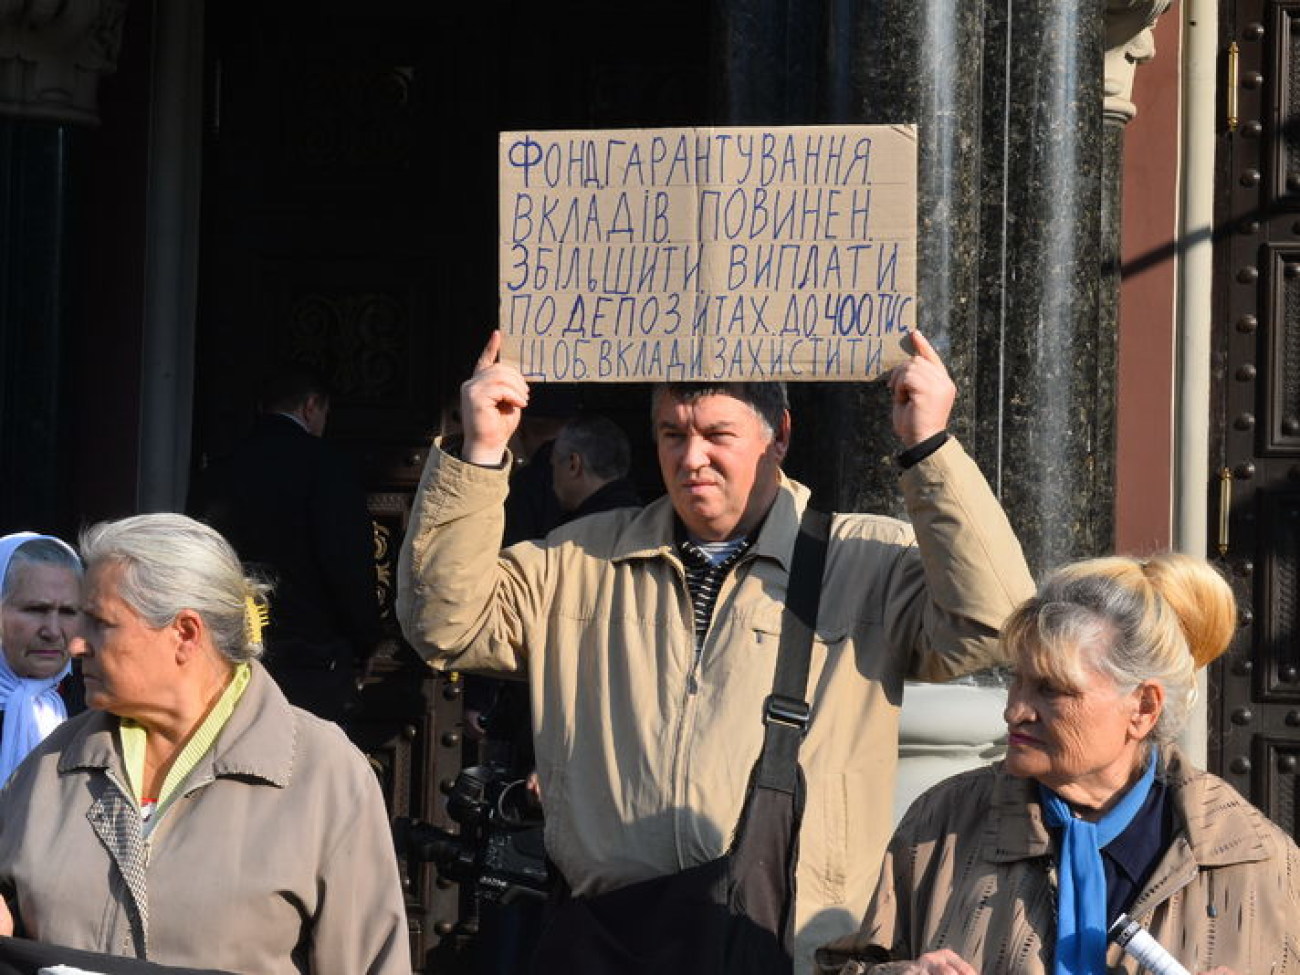 Активисты выступили против коррупции в банковской системе, 16 октября 2014 г.